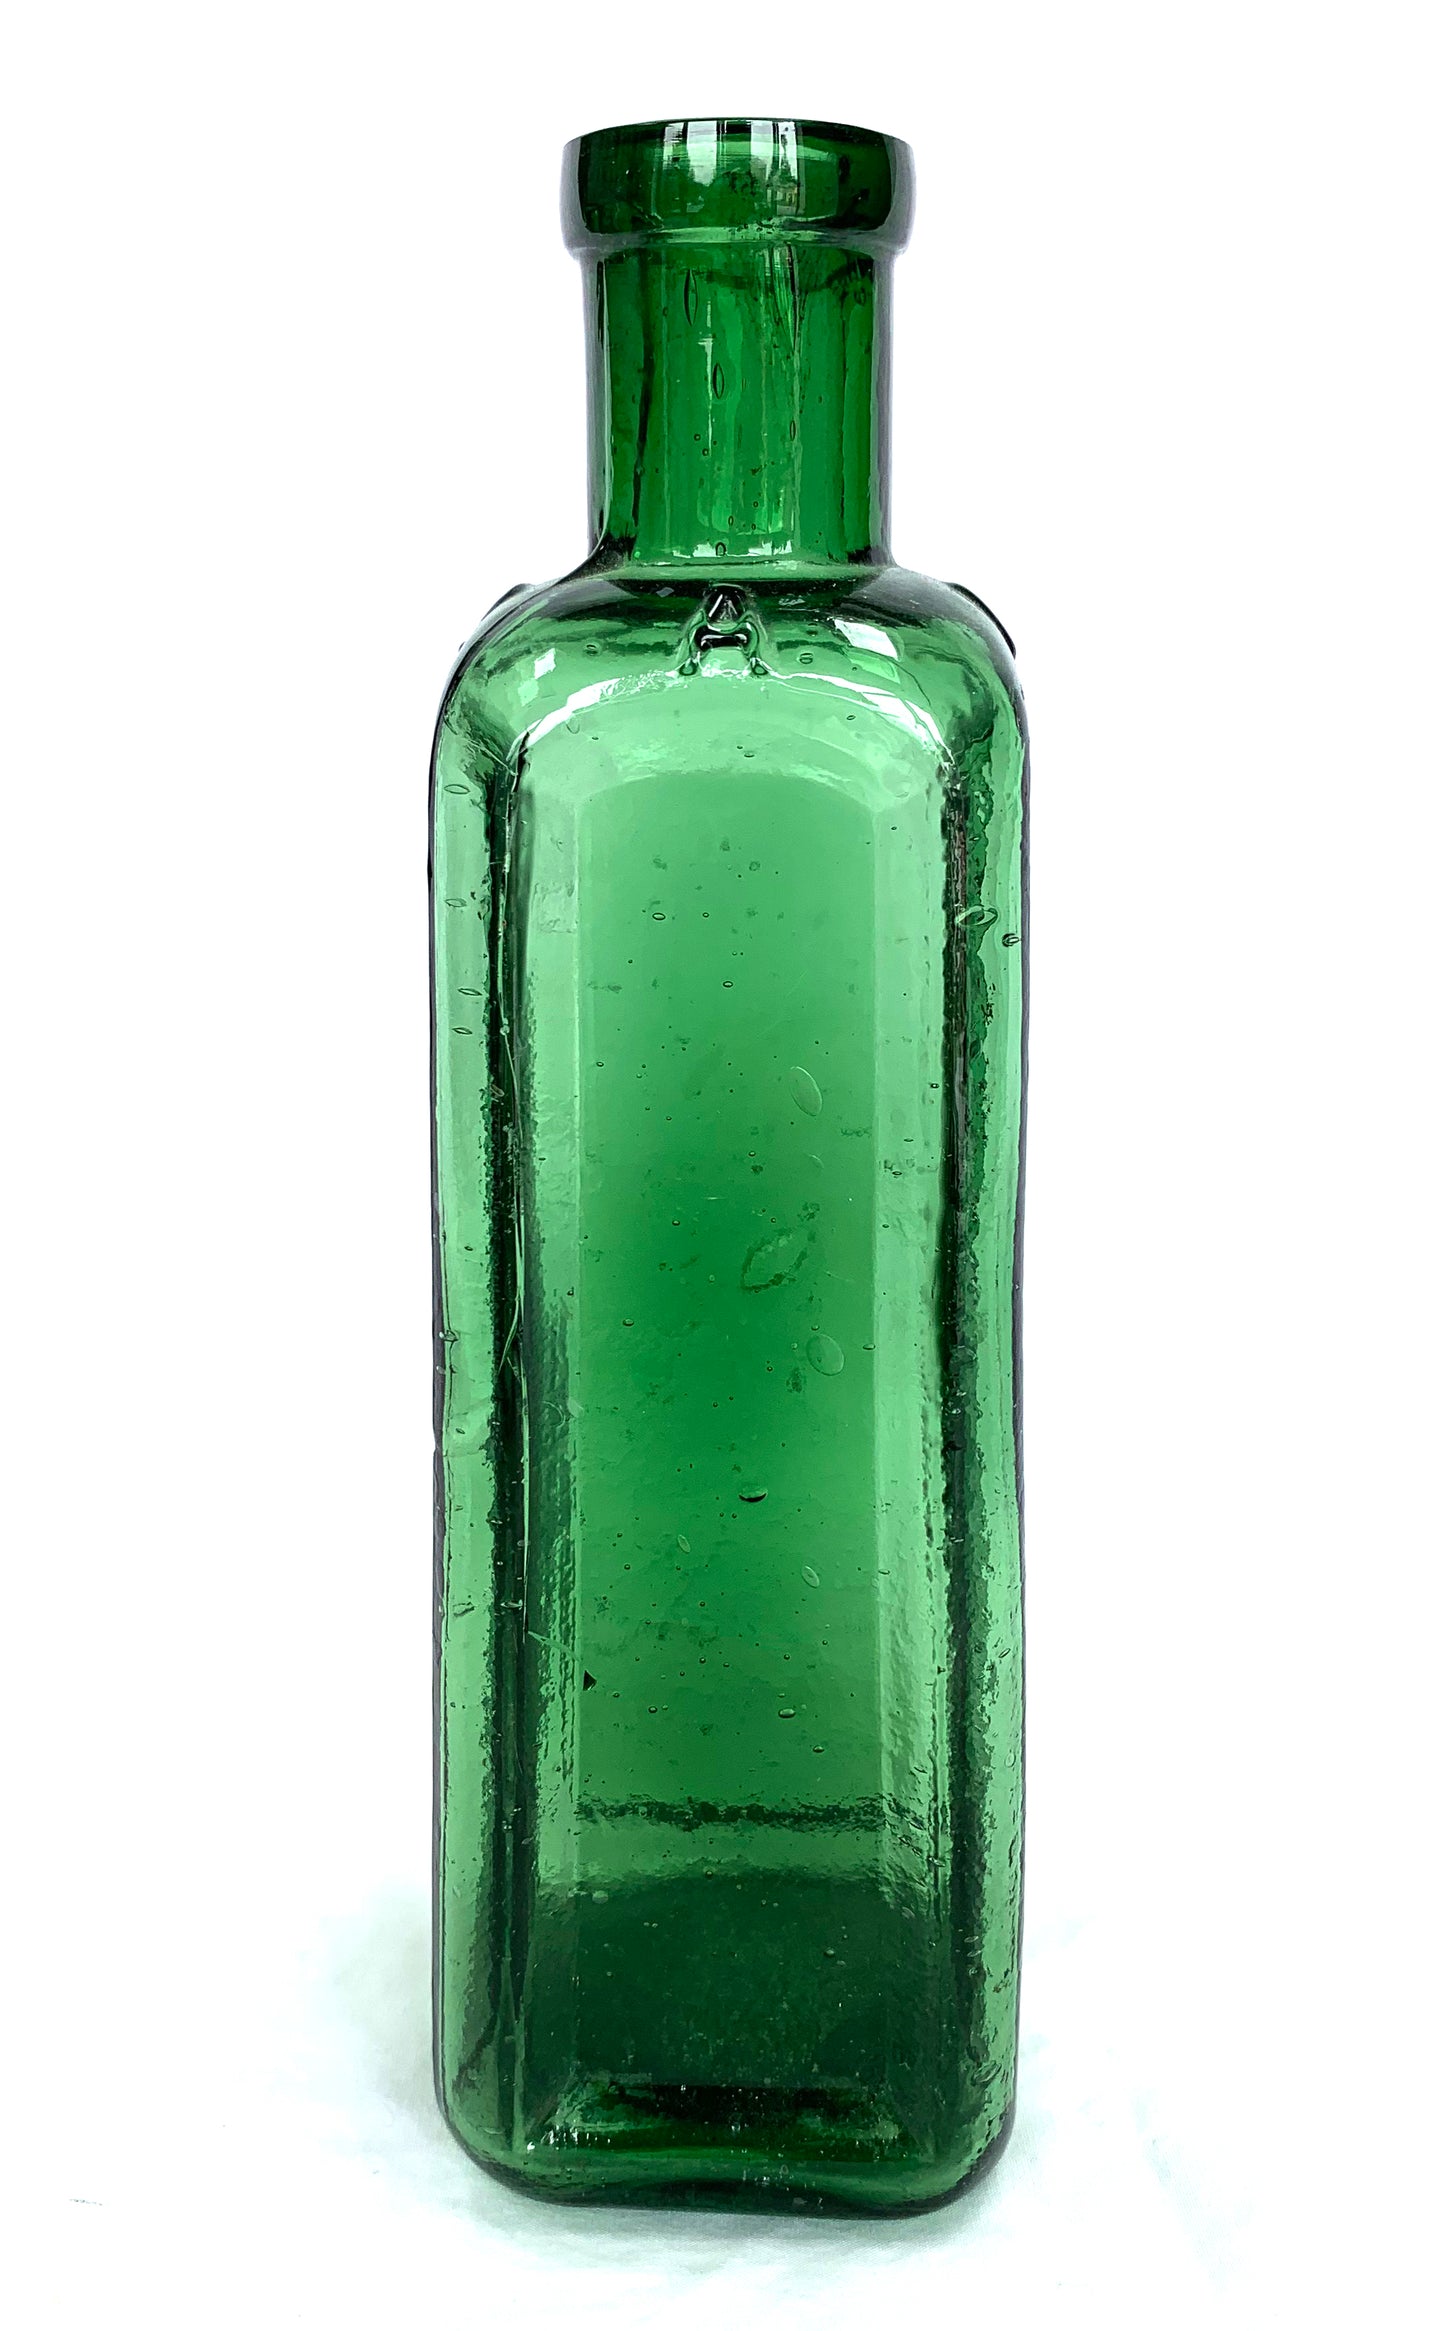 WW1 REC bottle dated 1893 found Passchendaele